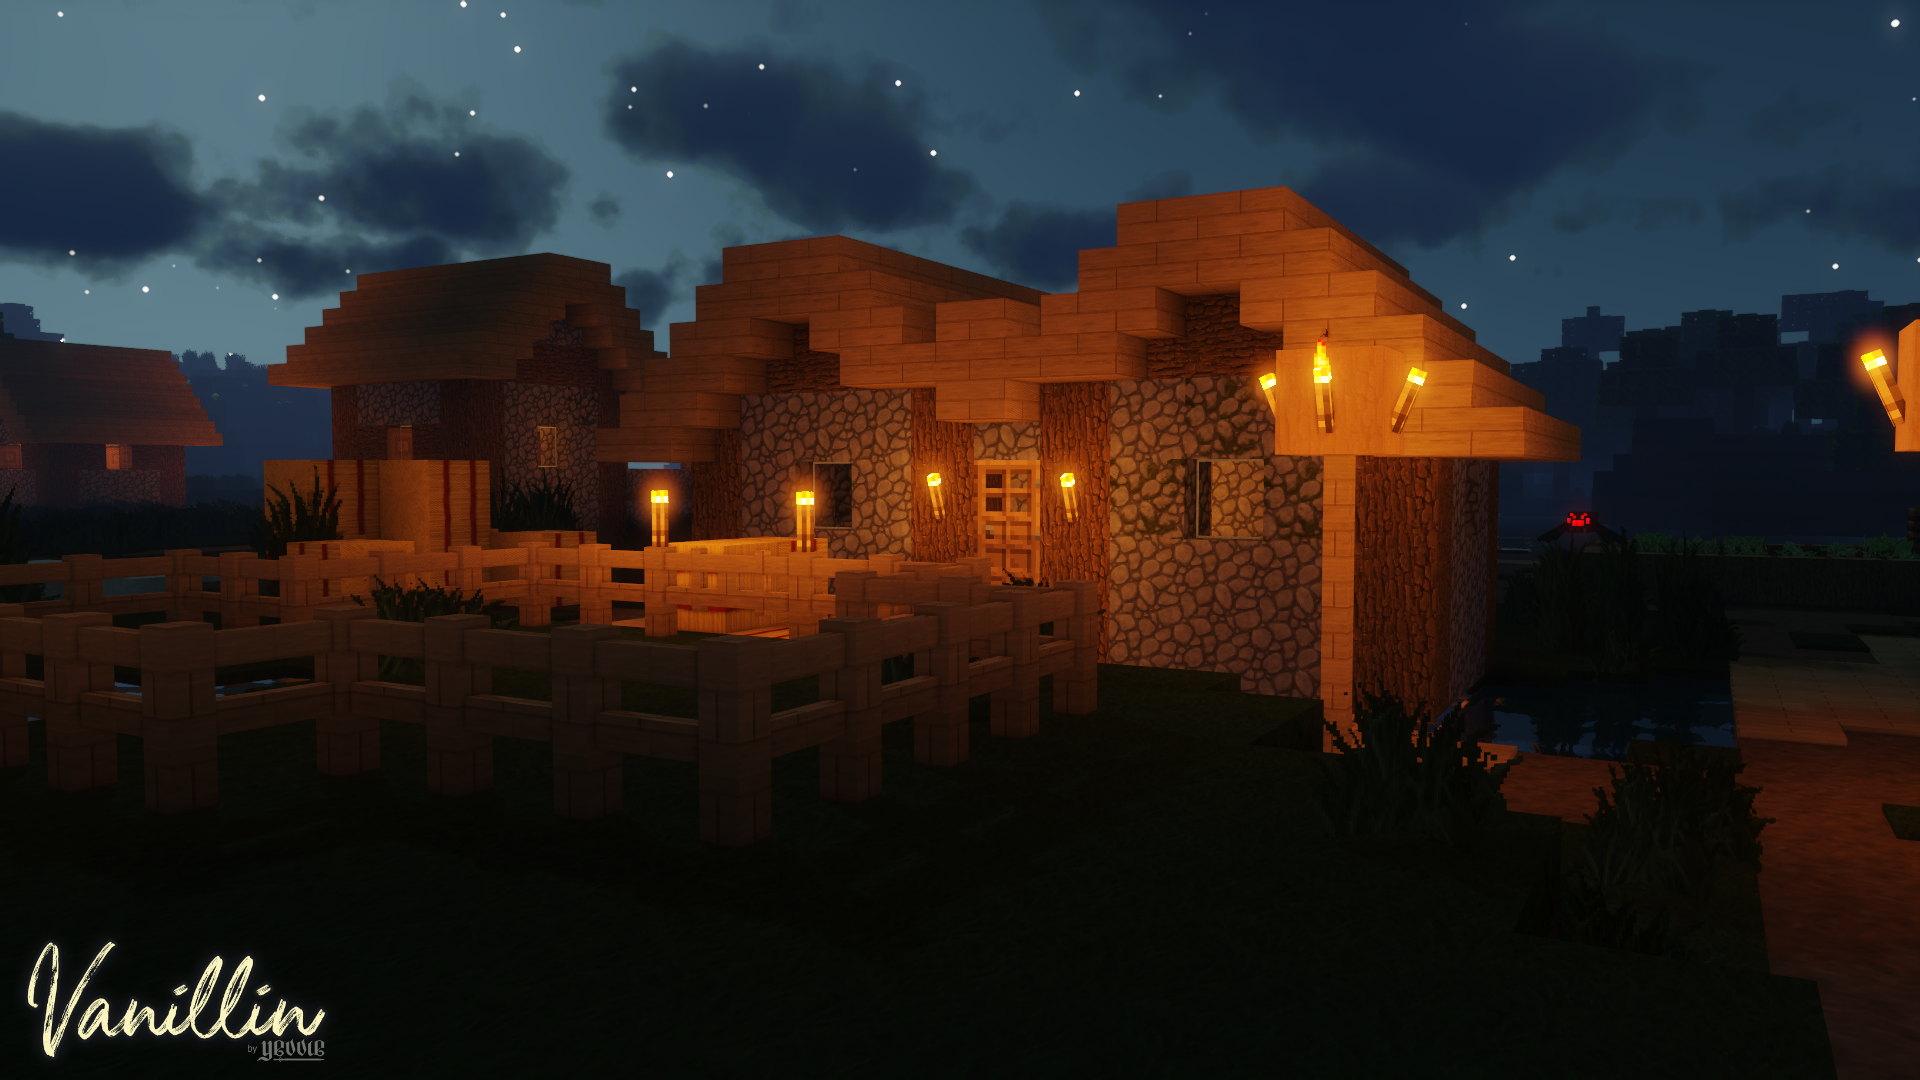 Village at Night